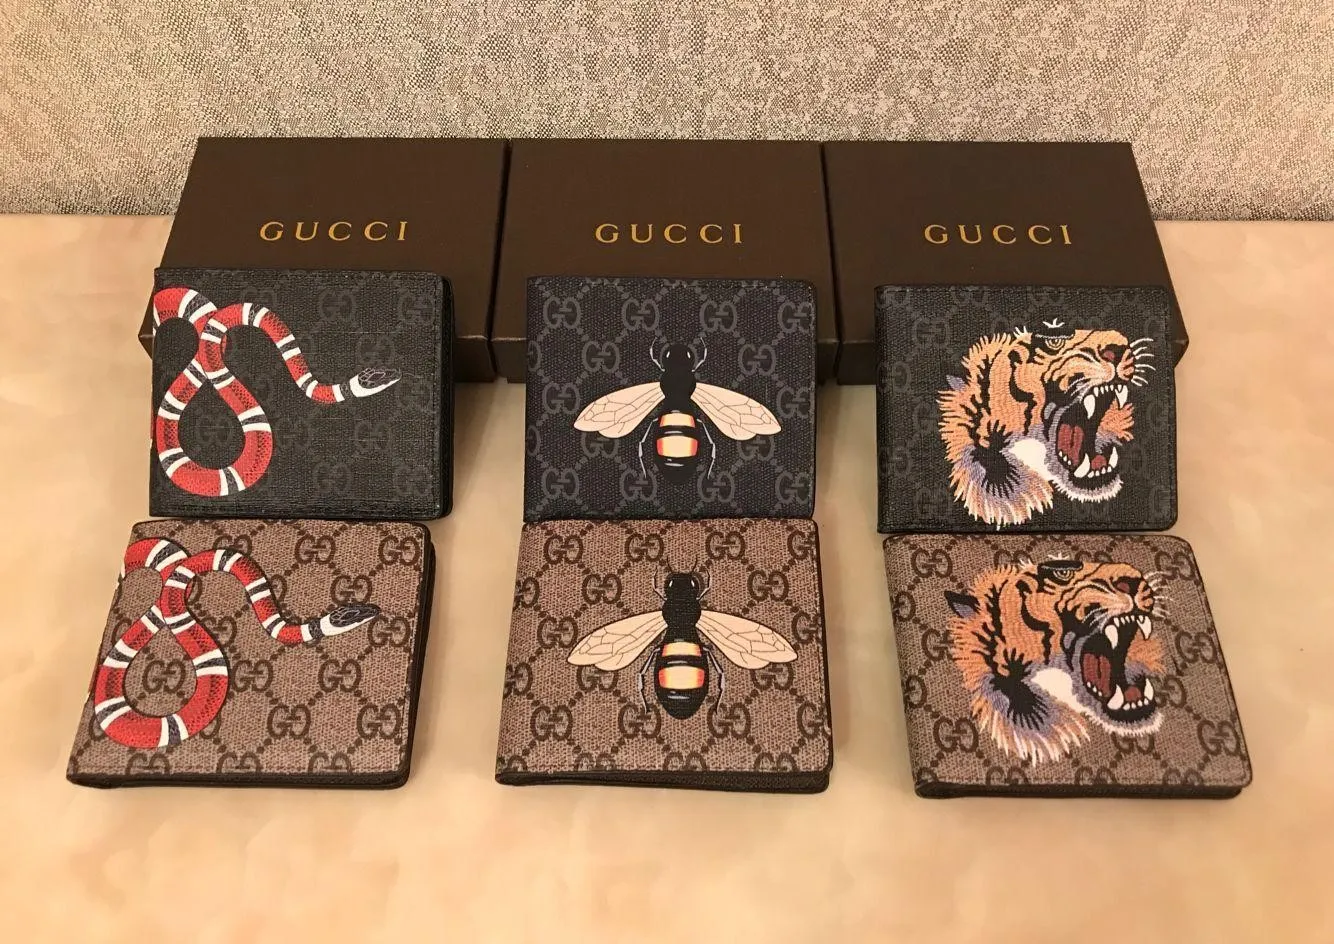 Gucc‍i 2018 AAA Cuero Genuino Para Billetera De Lujo Casual Diseñador Corto Titular De La Tarjeta Moda Monedero Para Hombres Envío Gratis De 13,85 € | DHgate